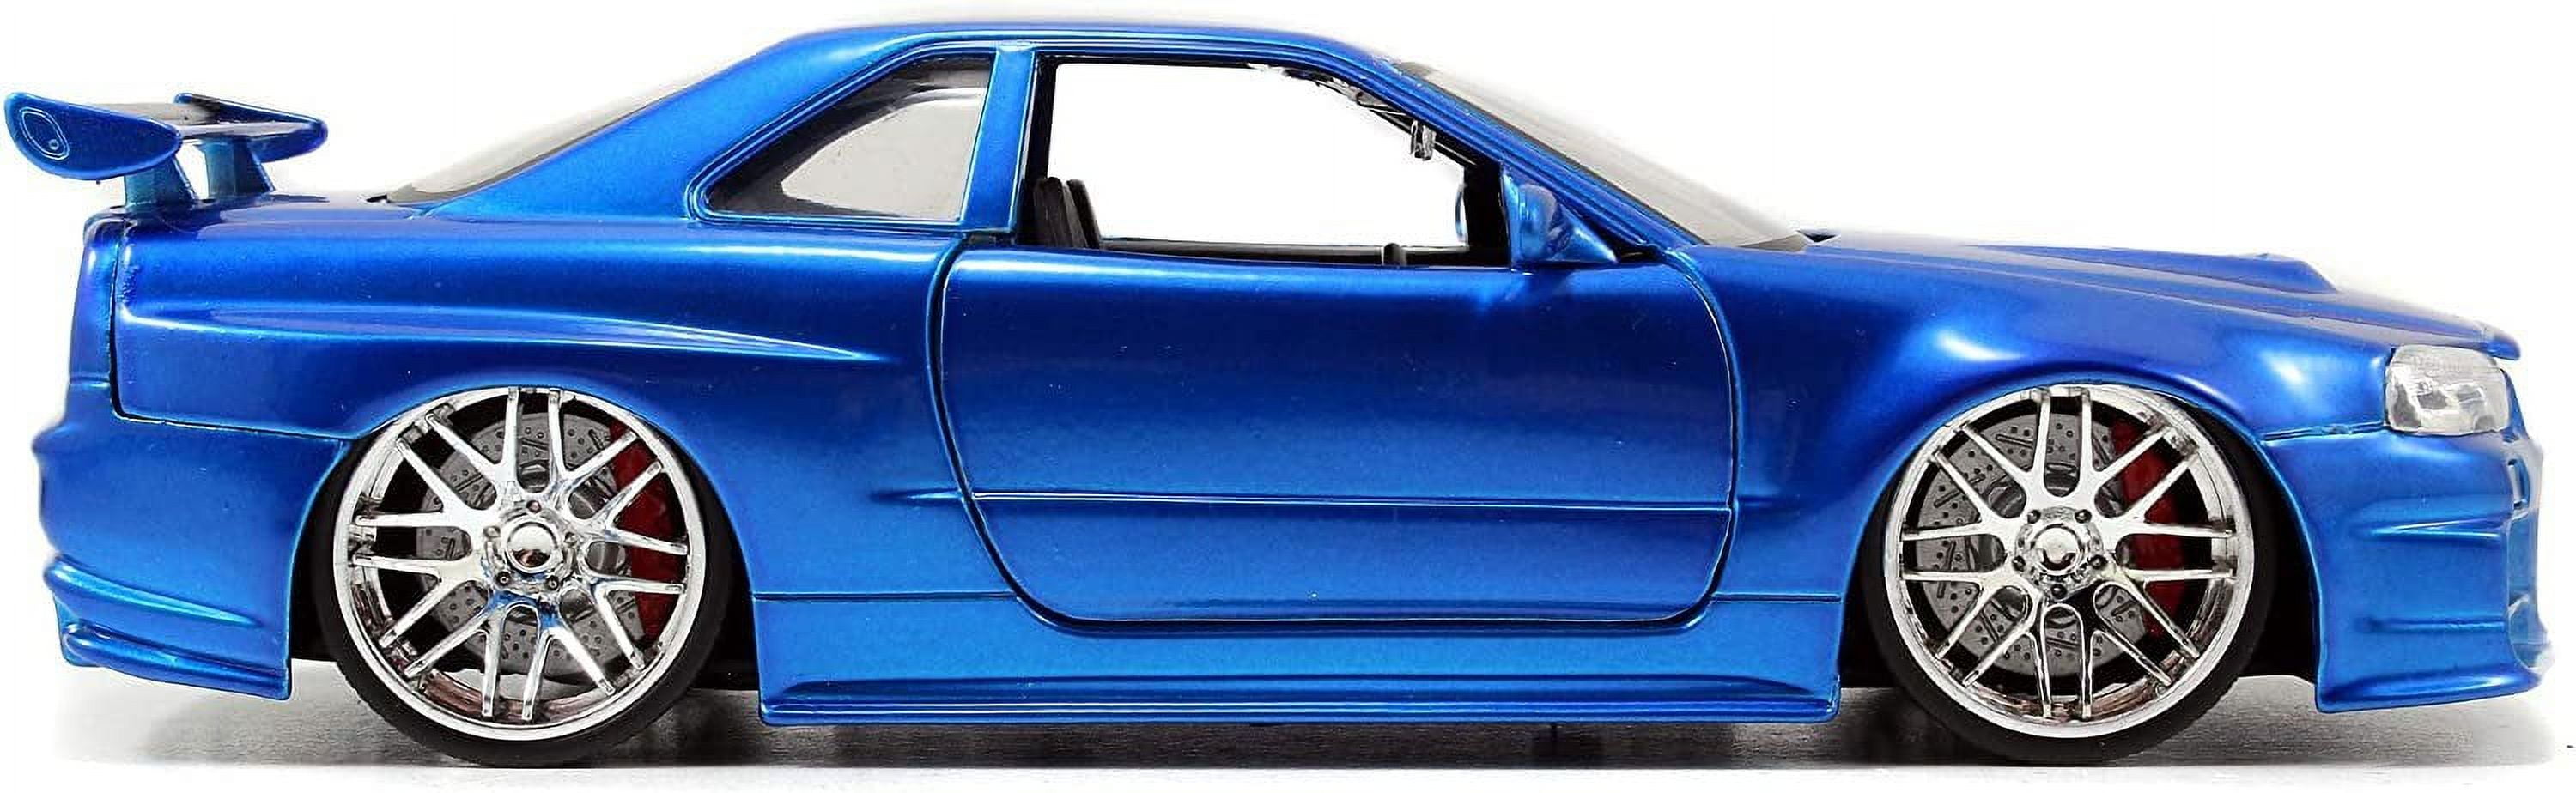 Jada Fast And Furious Nissan Skyline GT-R 2002 42370 RC Car Multicolor